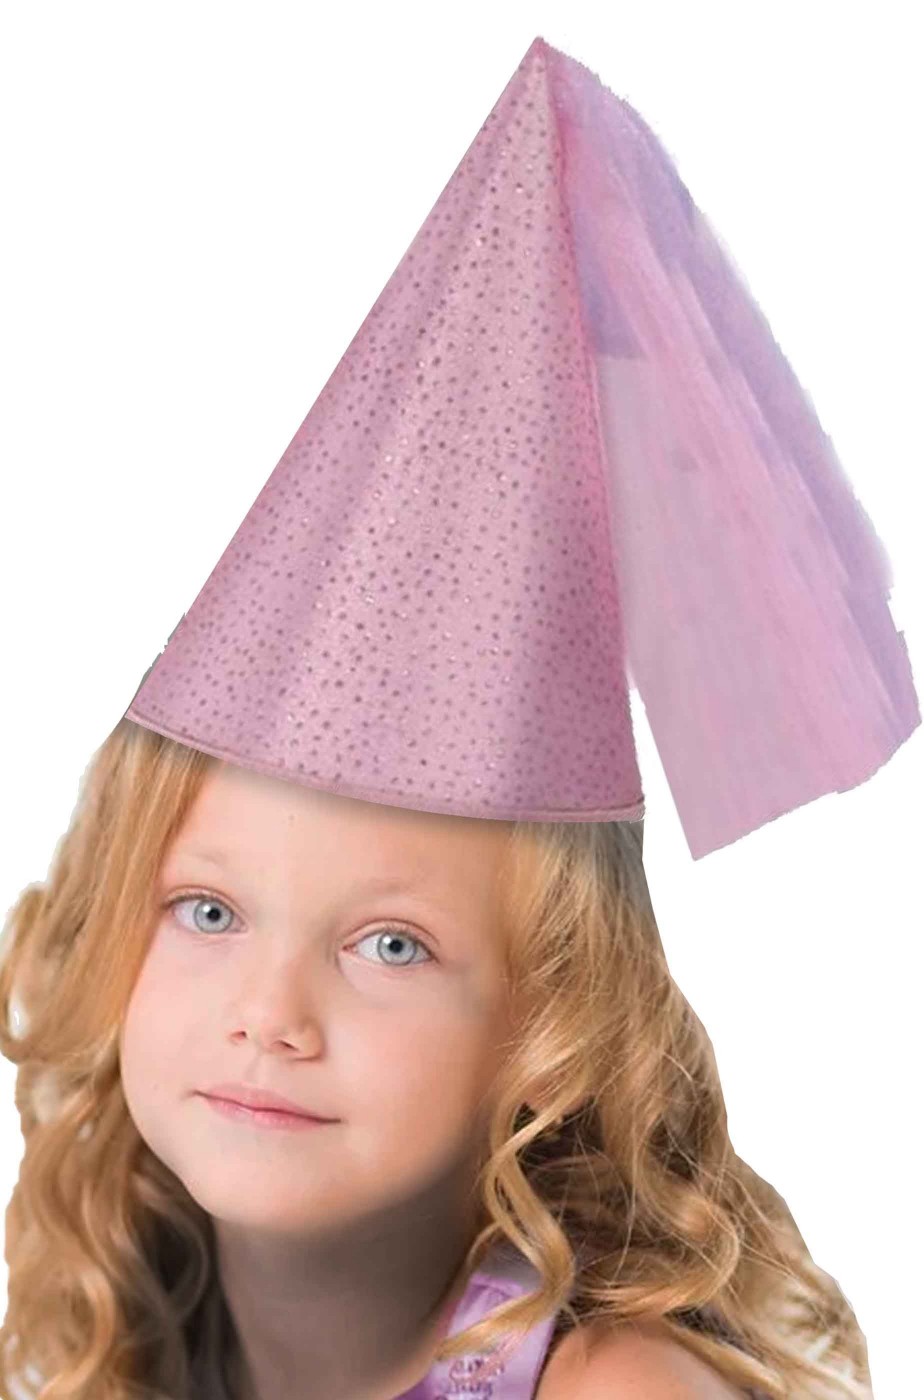 Cappello da fata rosa dama rinascimentale